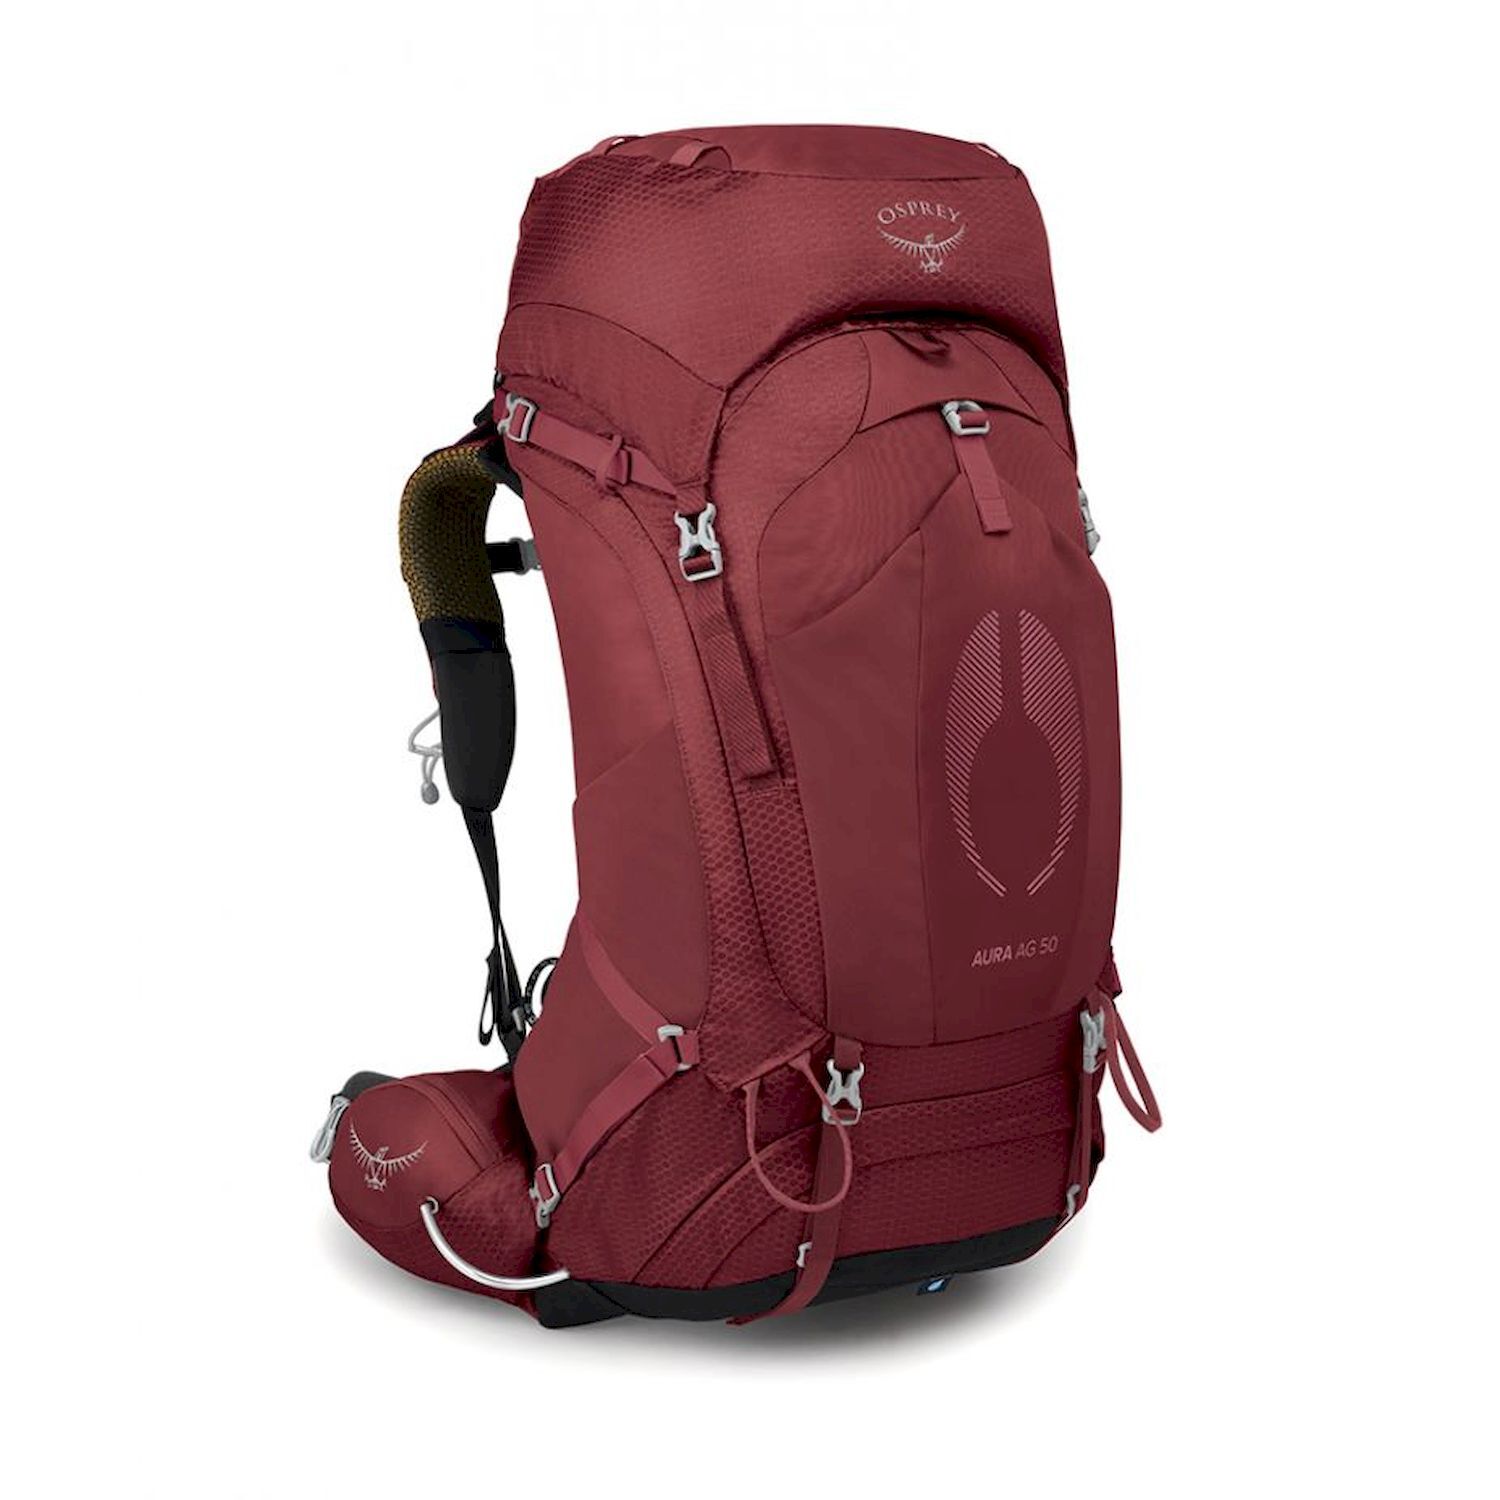 Osprey Aura AG 50 - Hiking backpack - Women's